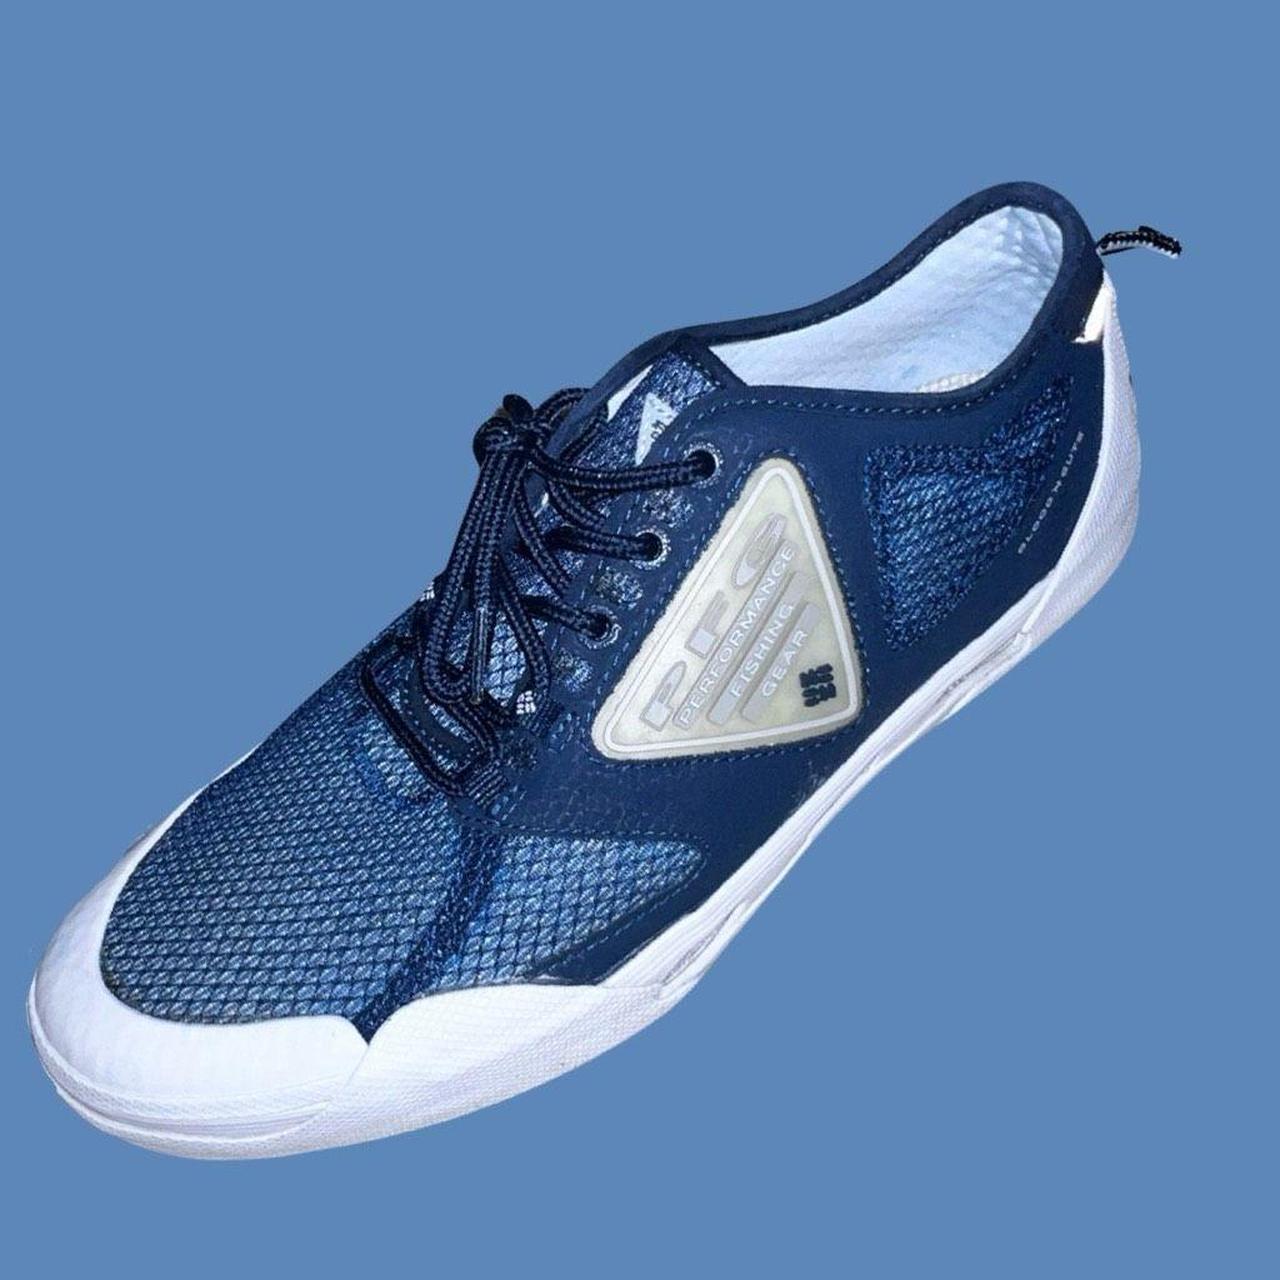 Columbia Sportswear Vulc N Vent Pro PFG Shoe Sneaker - Depop